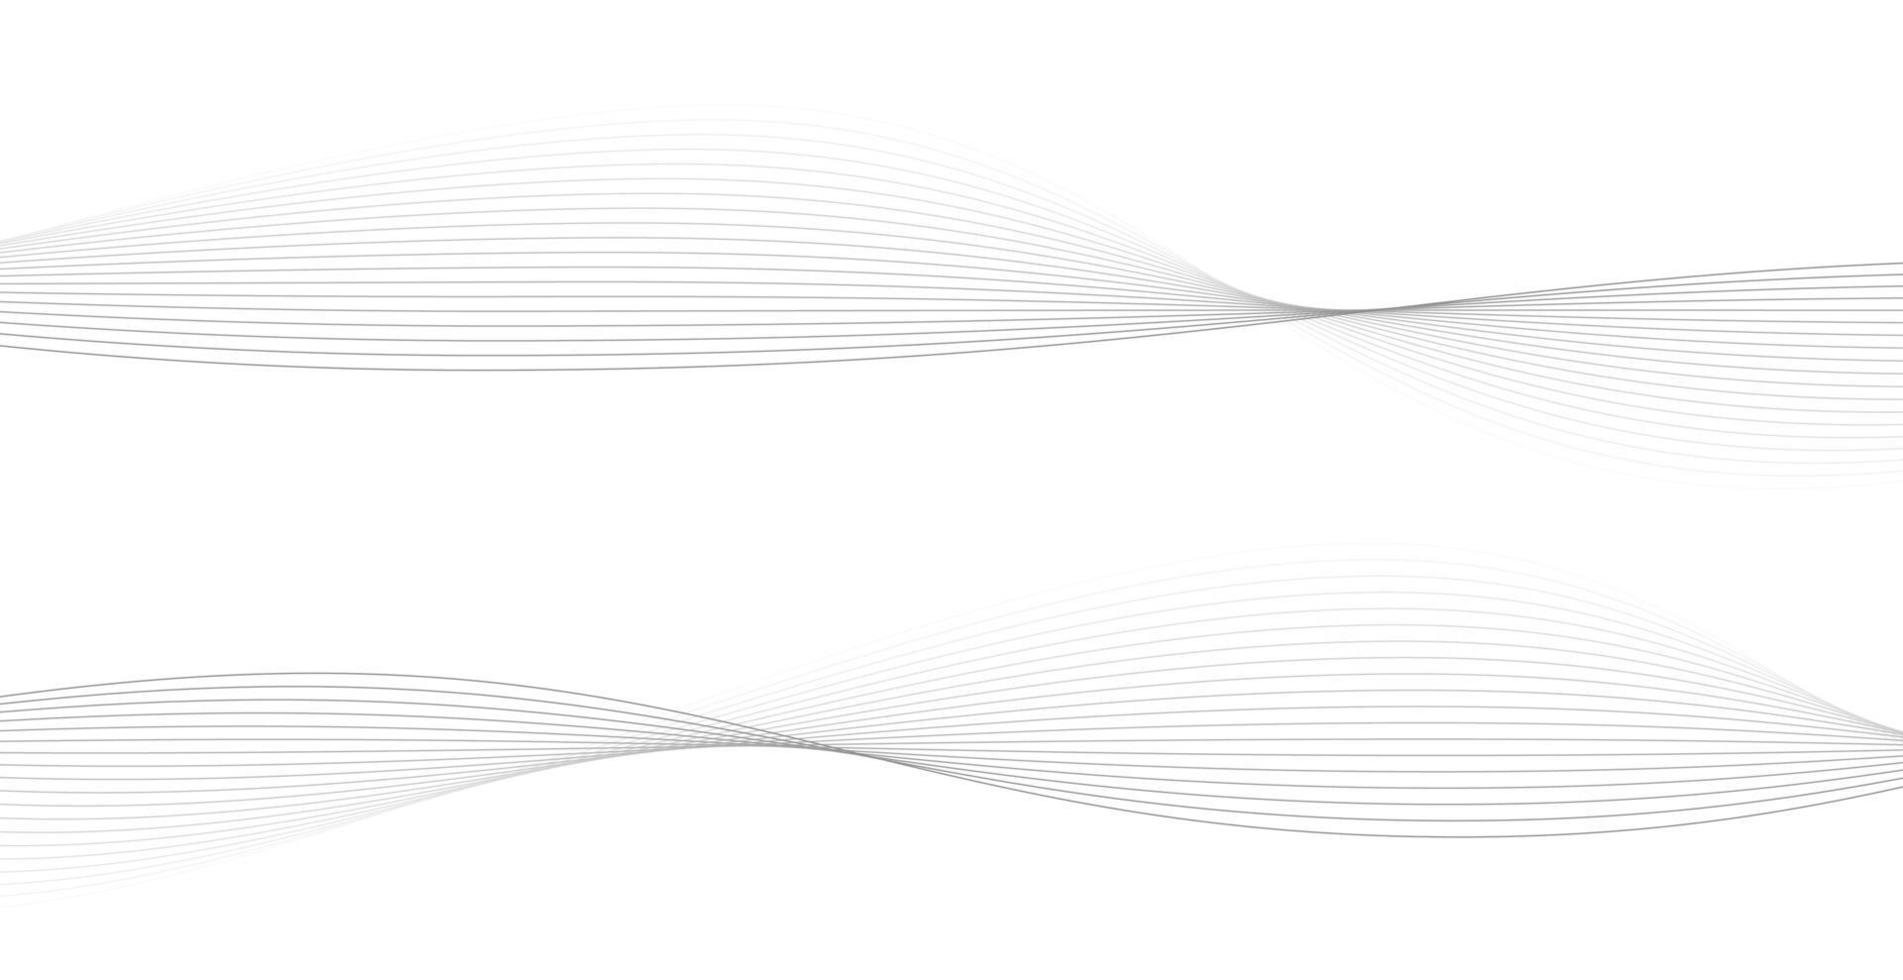 rayures ondulées abstraites sur fond blanc isolé. dessin au trait vague, design lisse incurvé. illustration vectorielle eps 10. vecteur